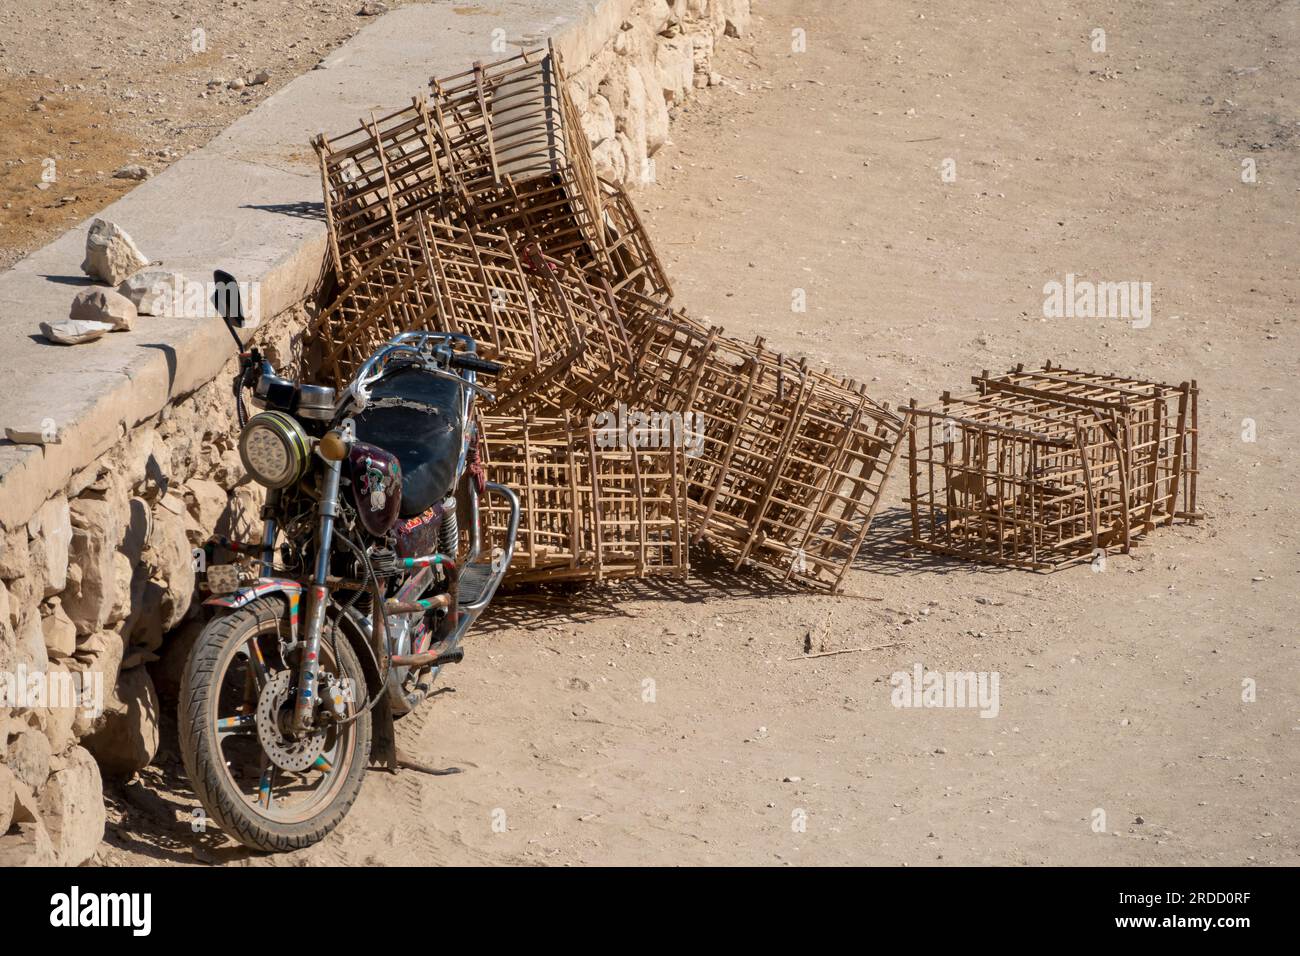 Une moto garée sur le sable près d'un mur de pierre à côté d'une pile de caisses de cannes fendues fabriquées localement Banque D'Images